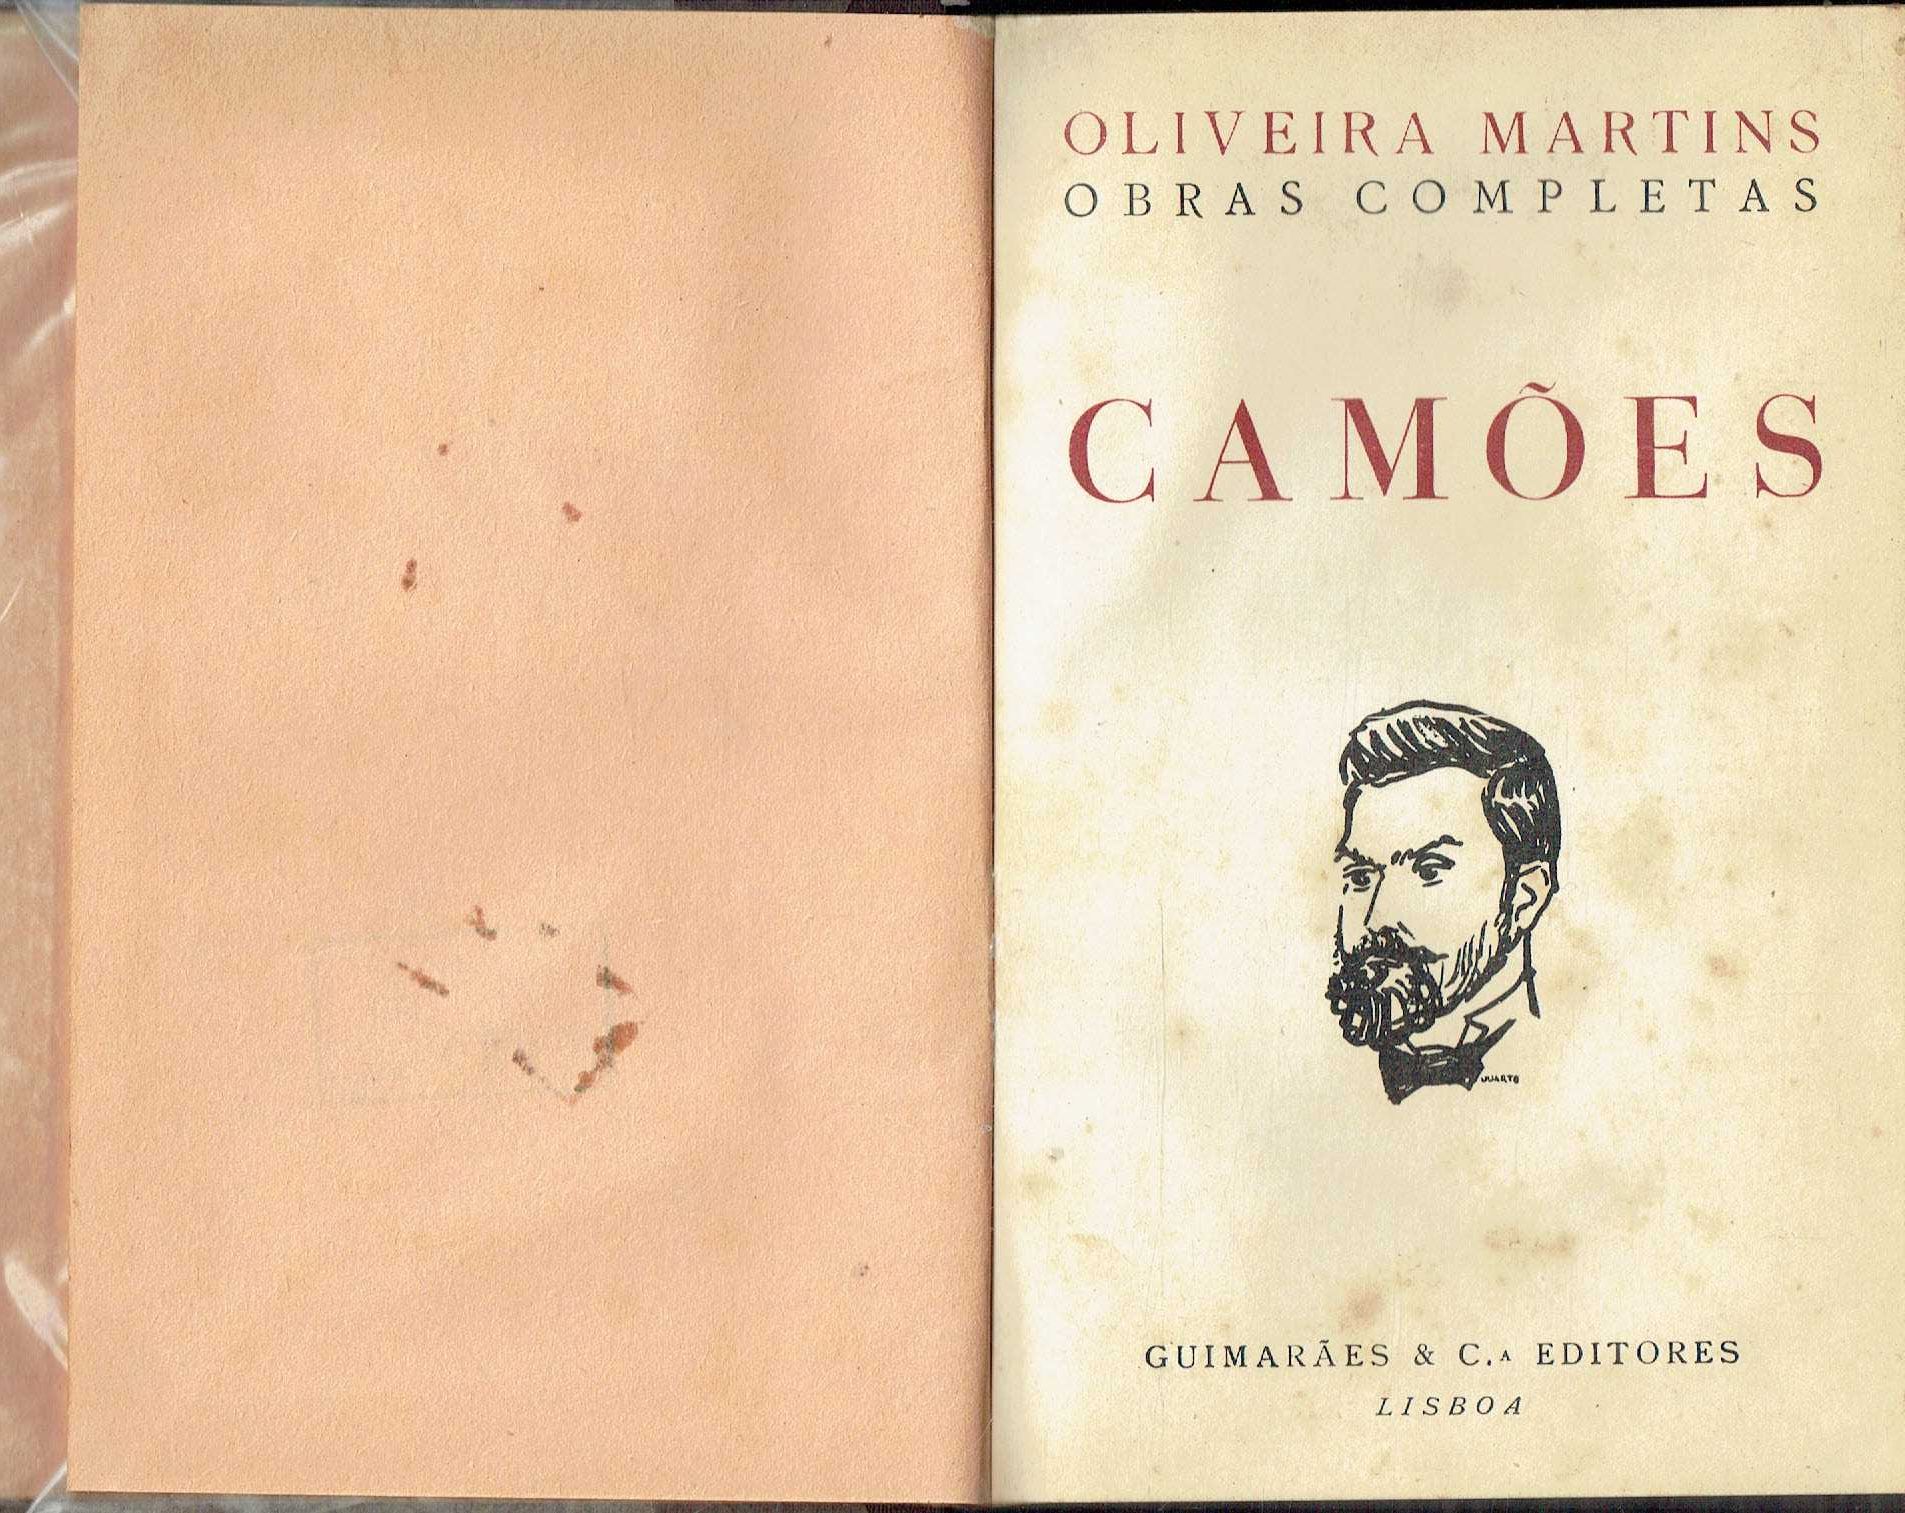 7837

Camões 
de Oliveira Martins.